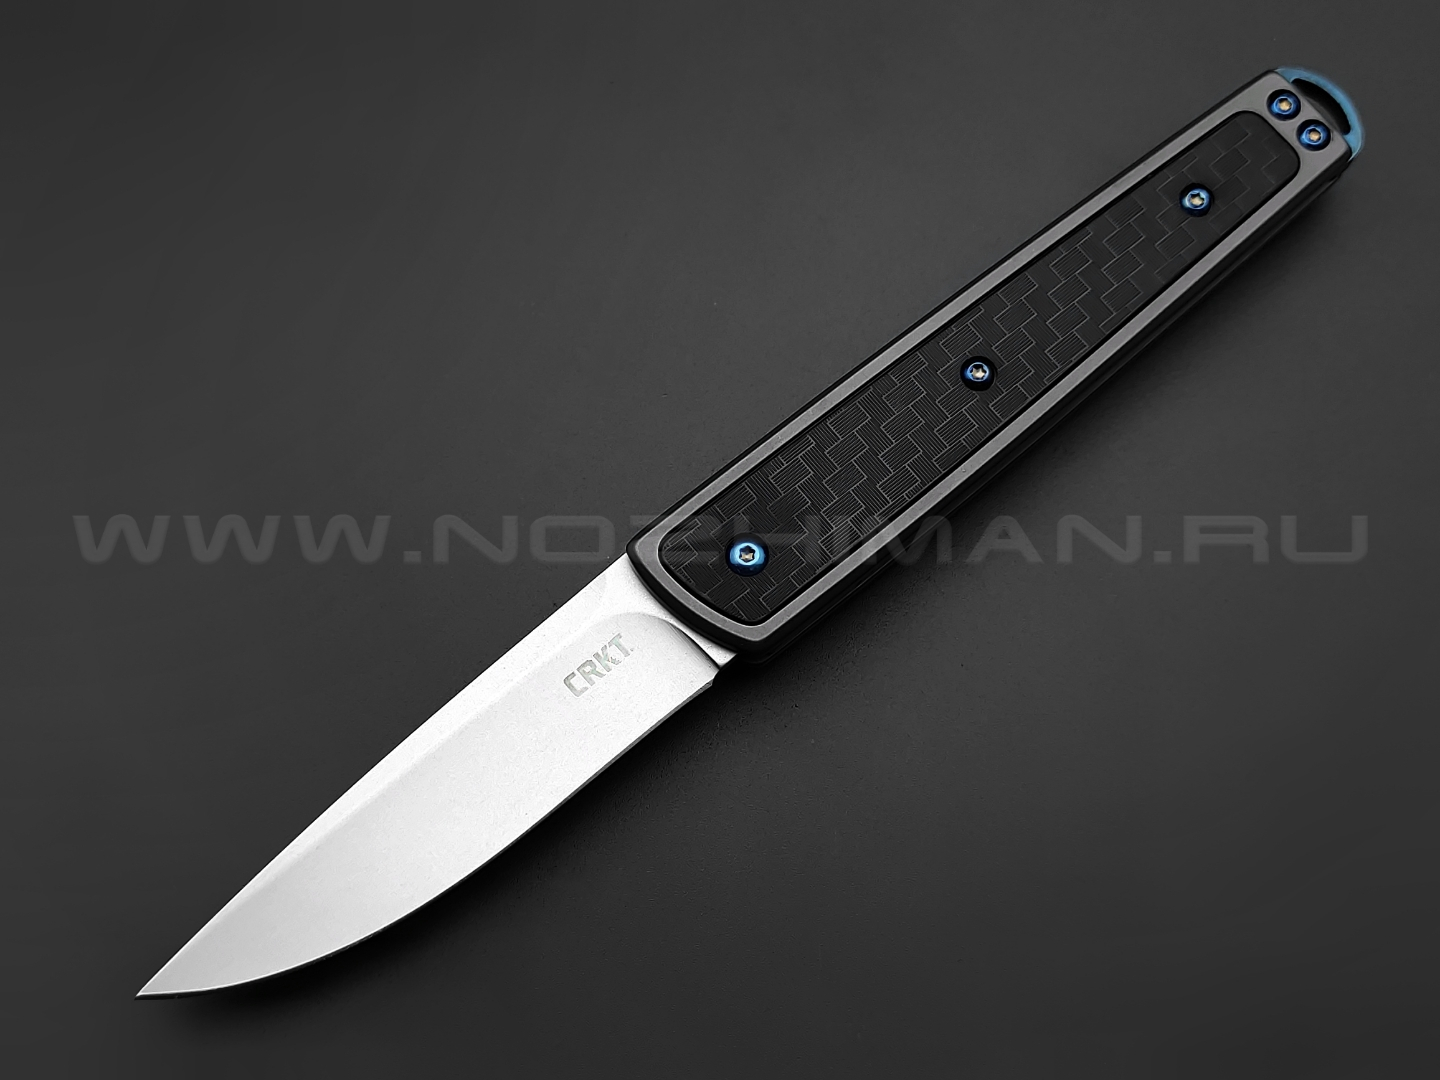 Нож CRKT Symmetry 7190 сталь 8Cr13MoV, рукоять Glass-Reinforced Nylon, steel 2Cr13